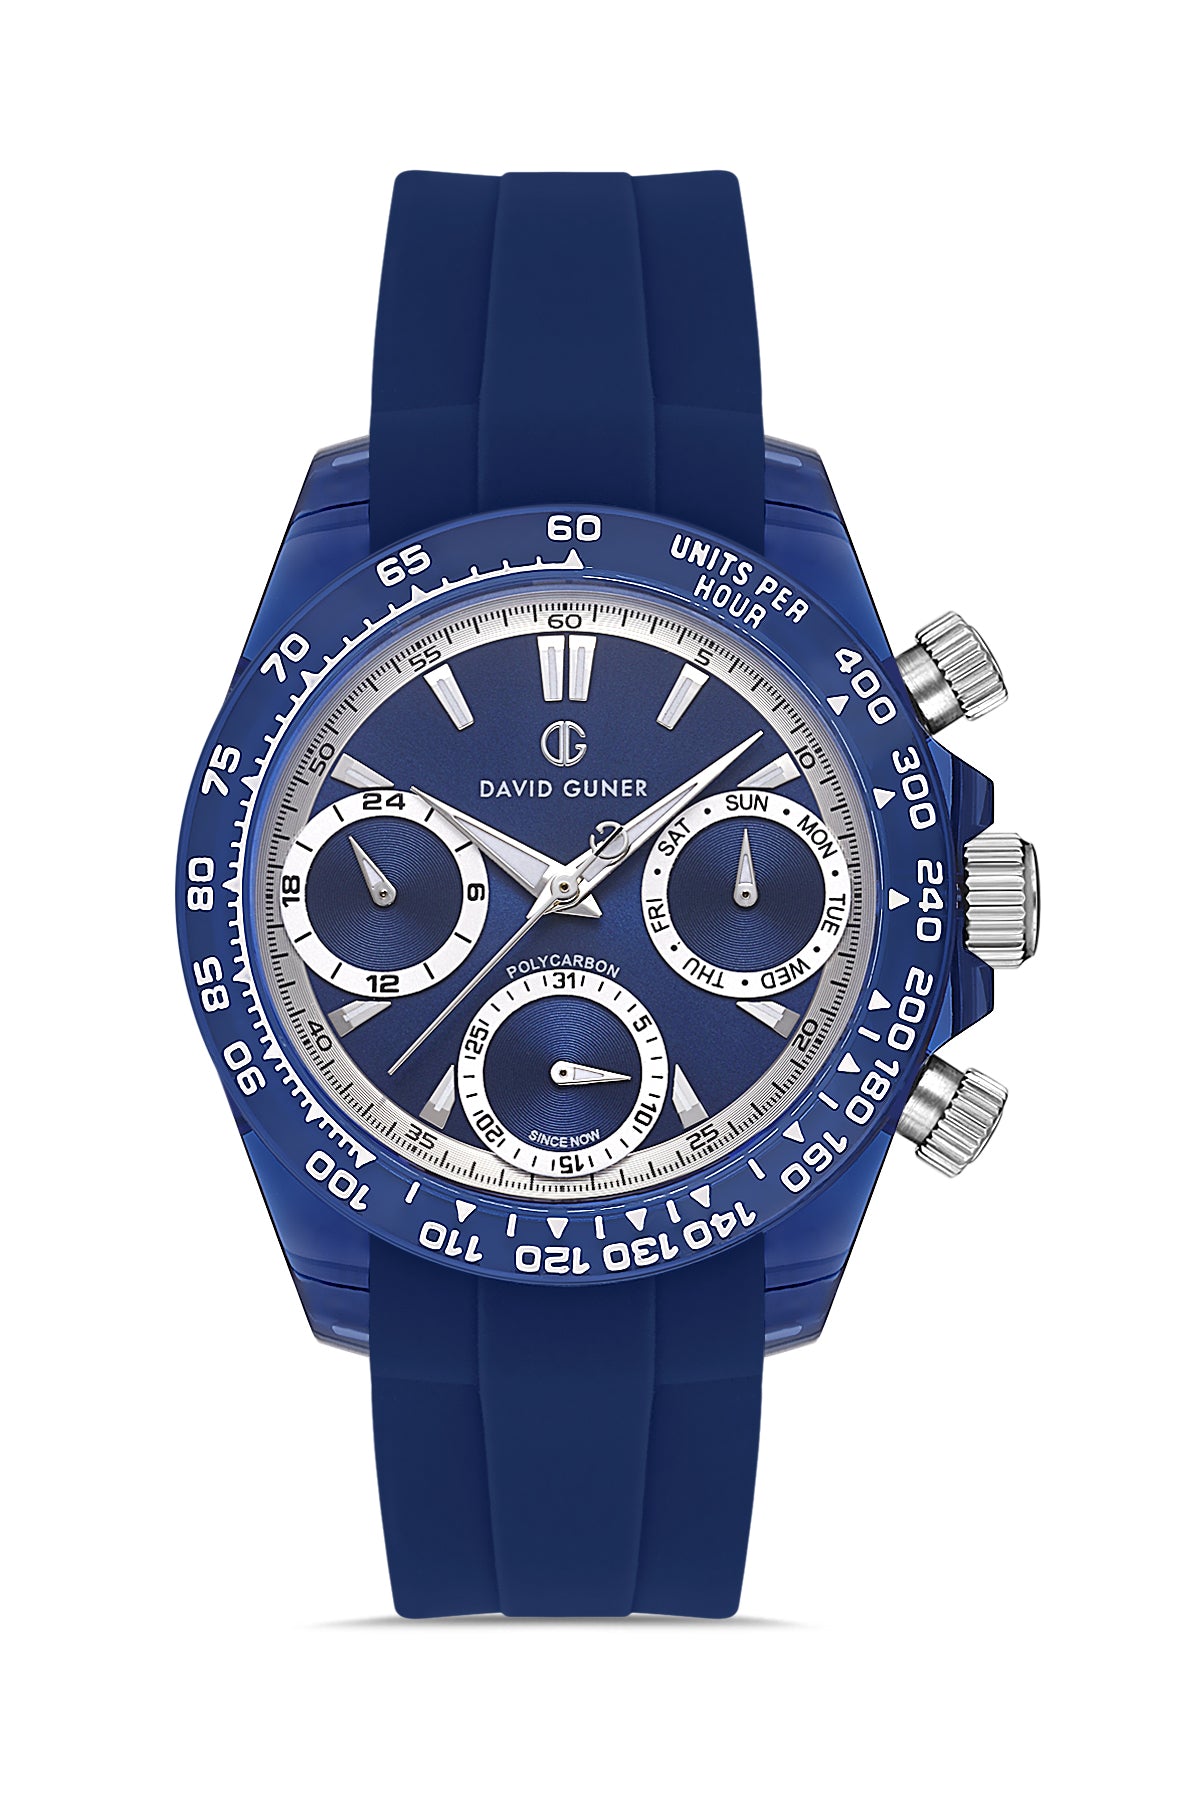 DAVID GUNER Polycarbonate Blue Strap Unisex Wristwatch